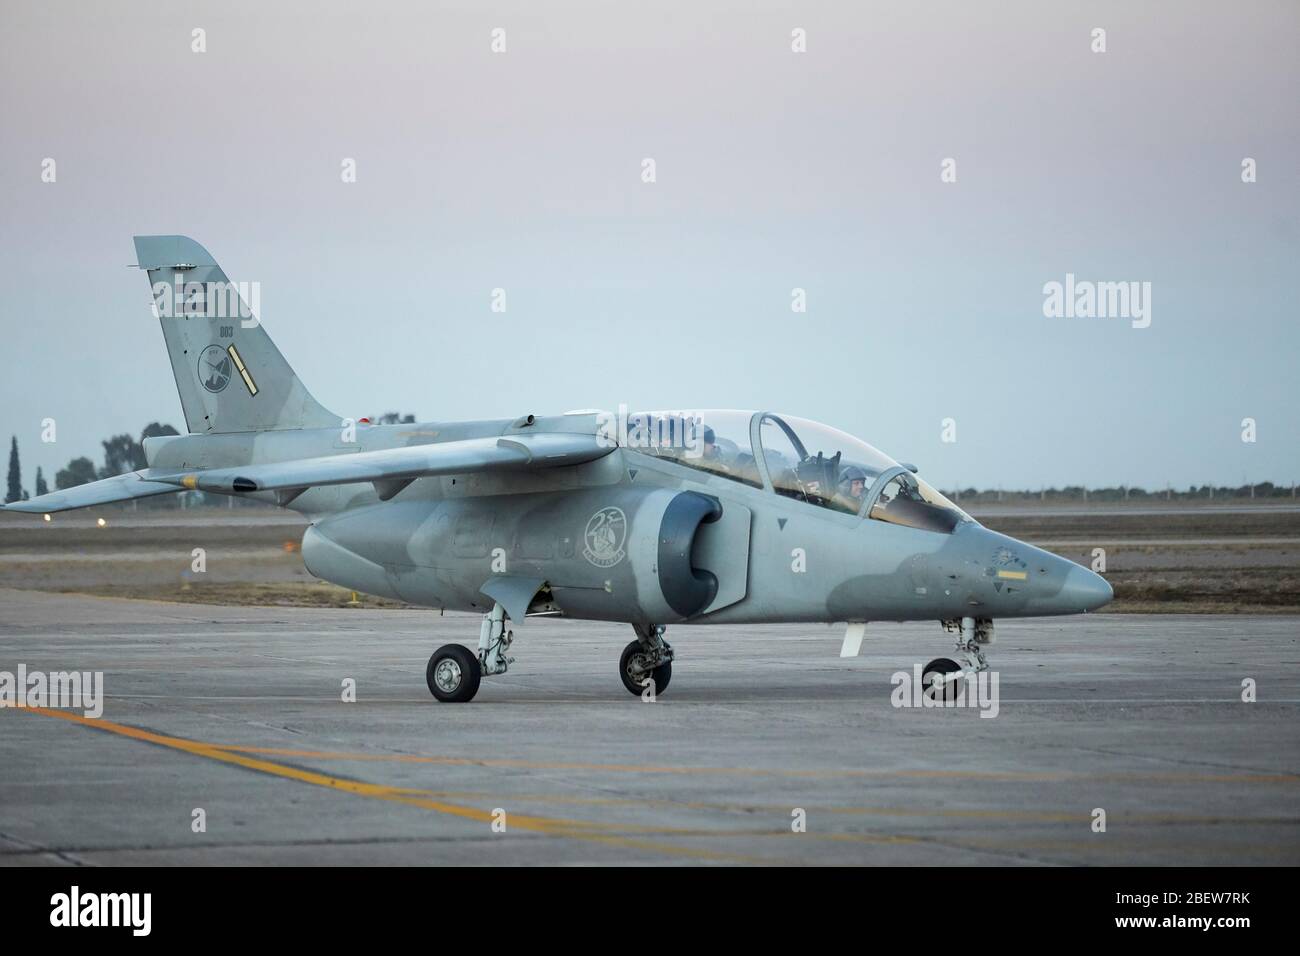 MENDOZA, ARGENTINIEN, 10. Juni 2015. IA-63 Pampa, ist ein Trainingsflugzeug mit Kampffähigkeiten, entworfen und gebaut in Argentinien, IV Brigada Aerea, La Stockfoto